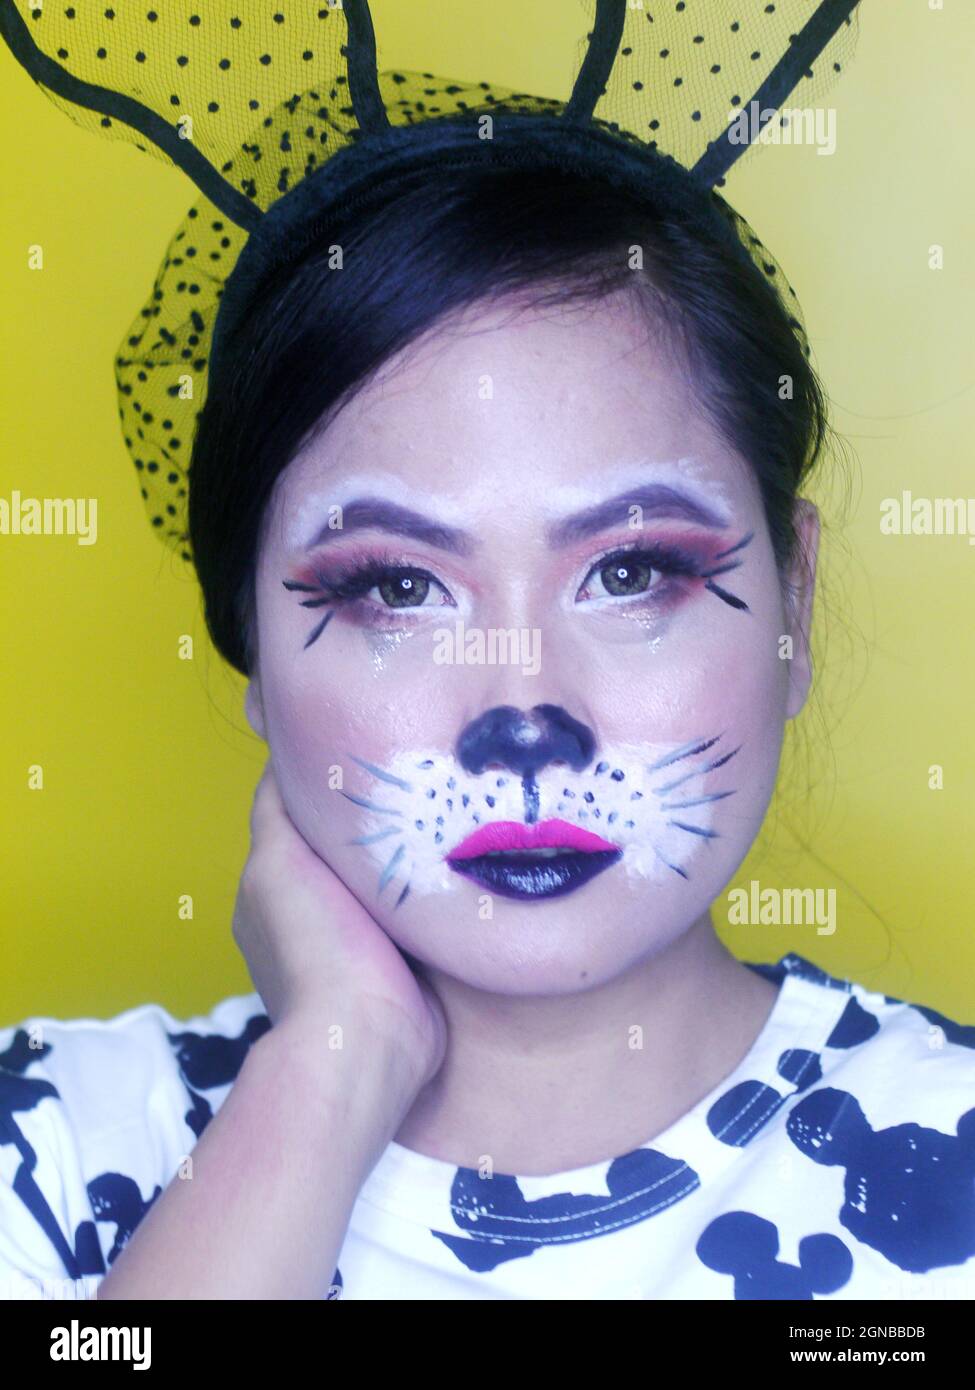 Portrait de fille asiatique avec maquillage fantaisie. Banque D'Images